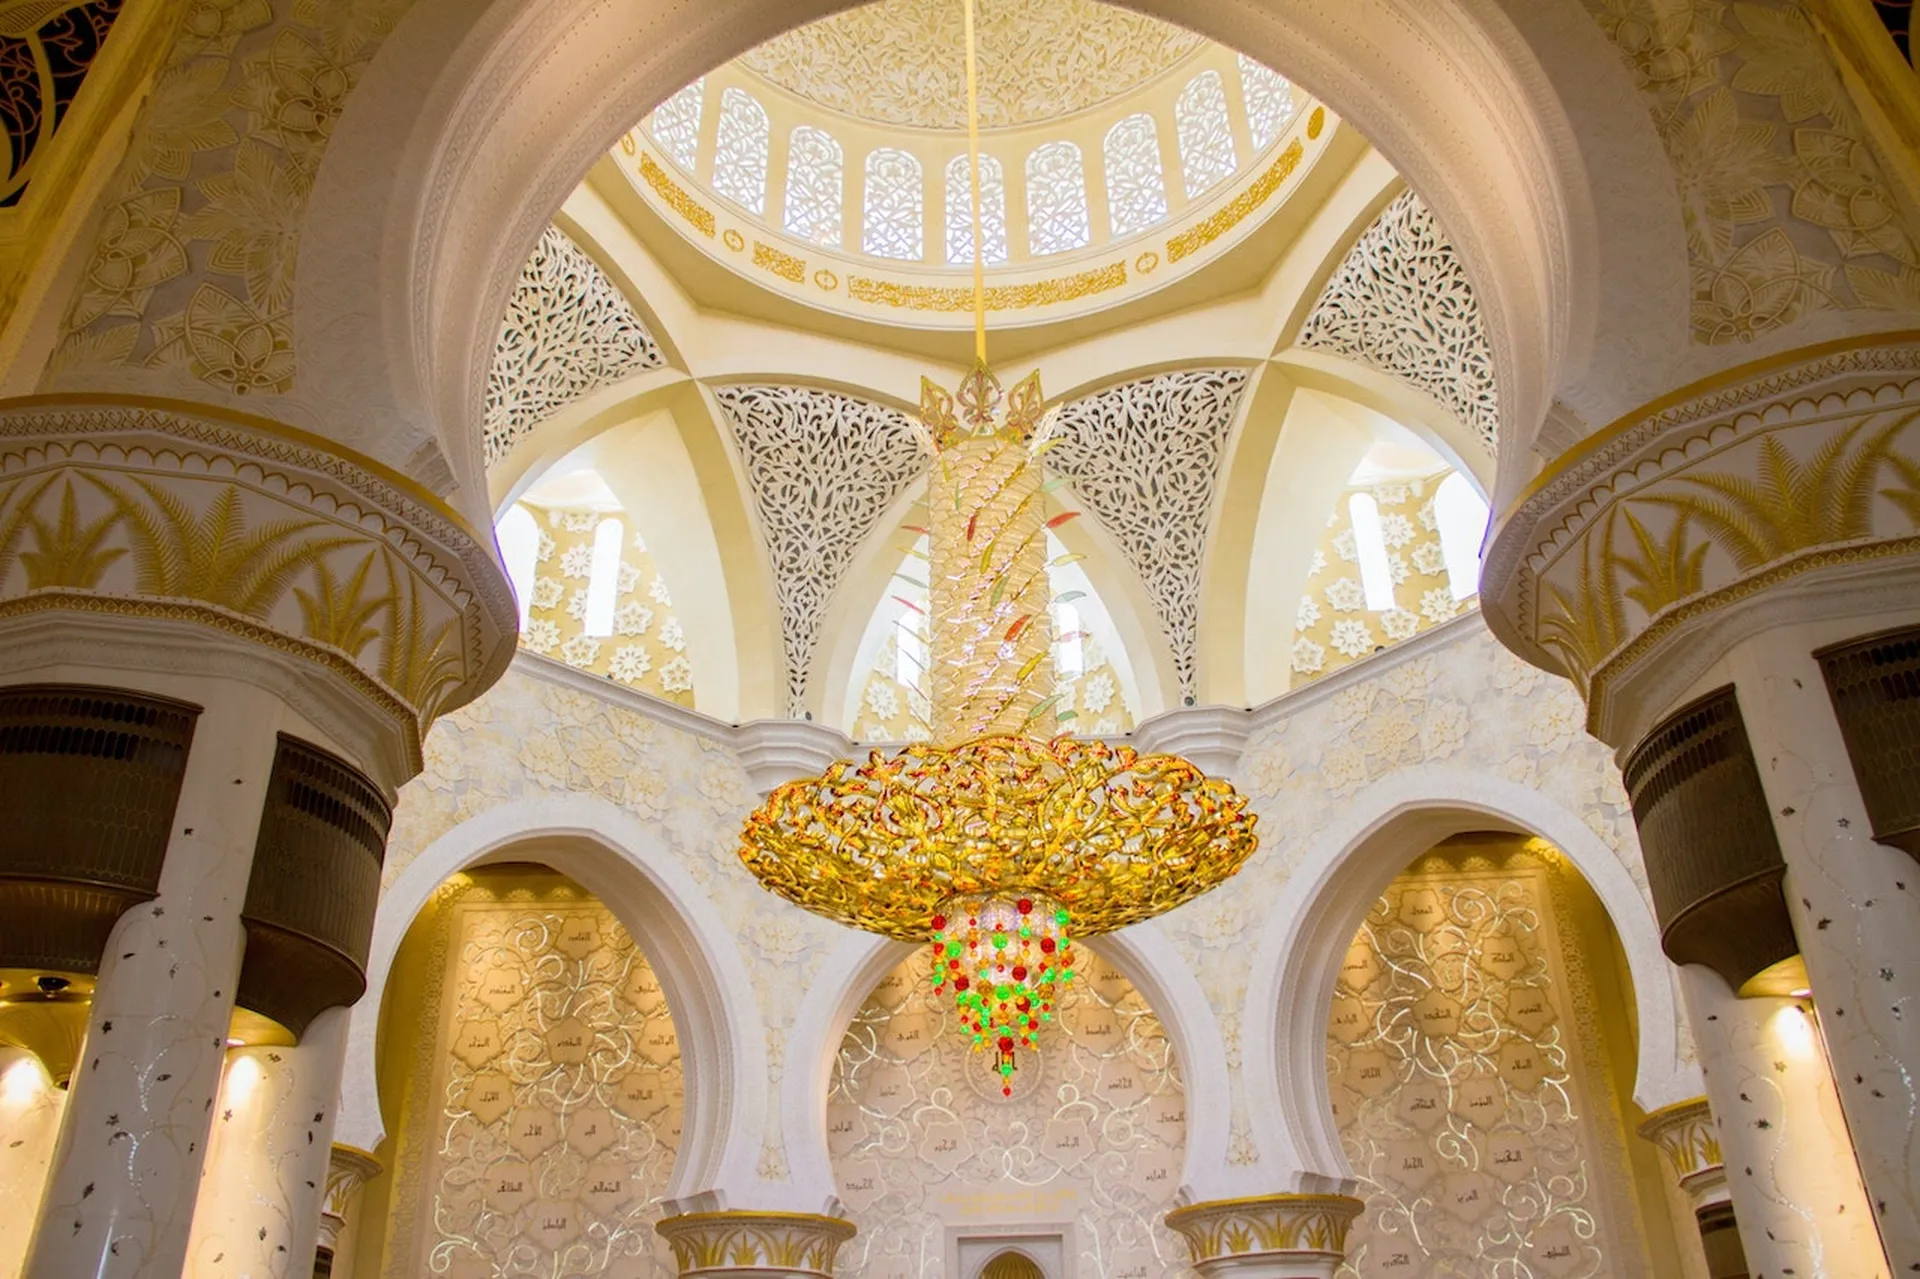 Um Ayman - Barakah bint tha'alabah Mosque